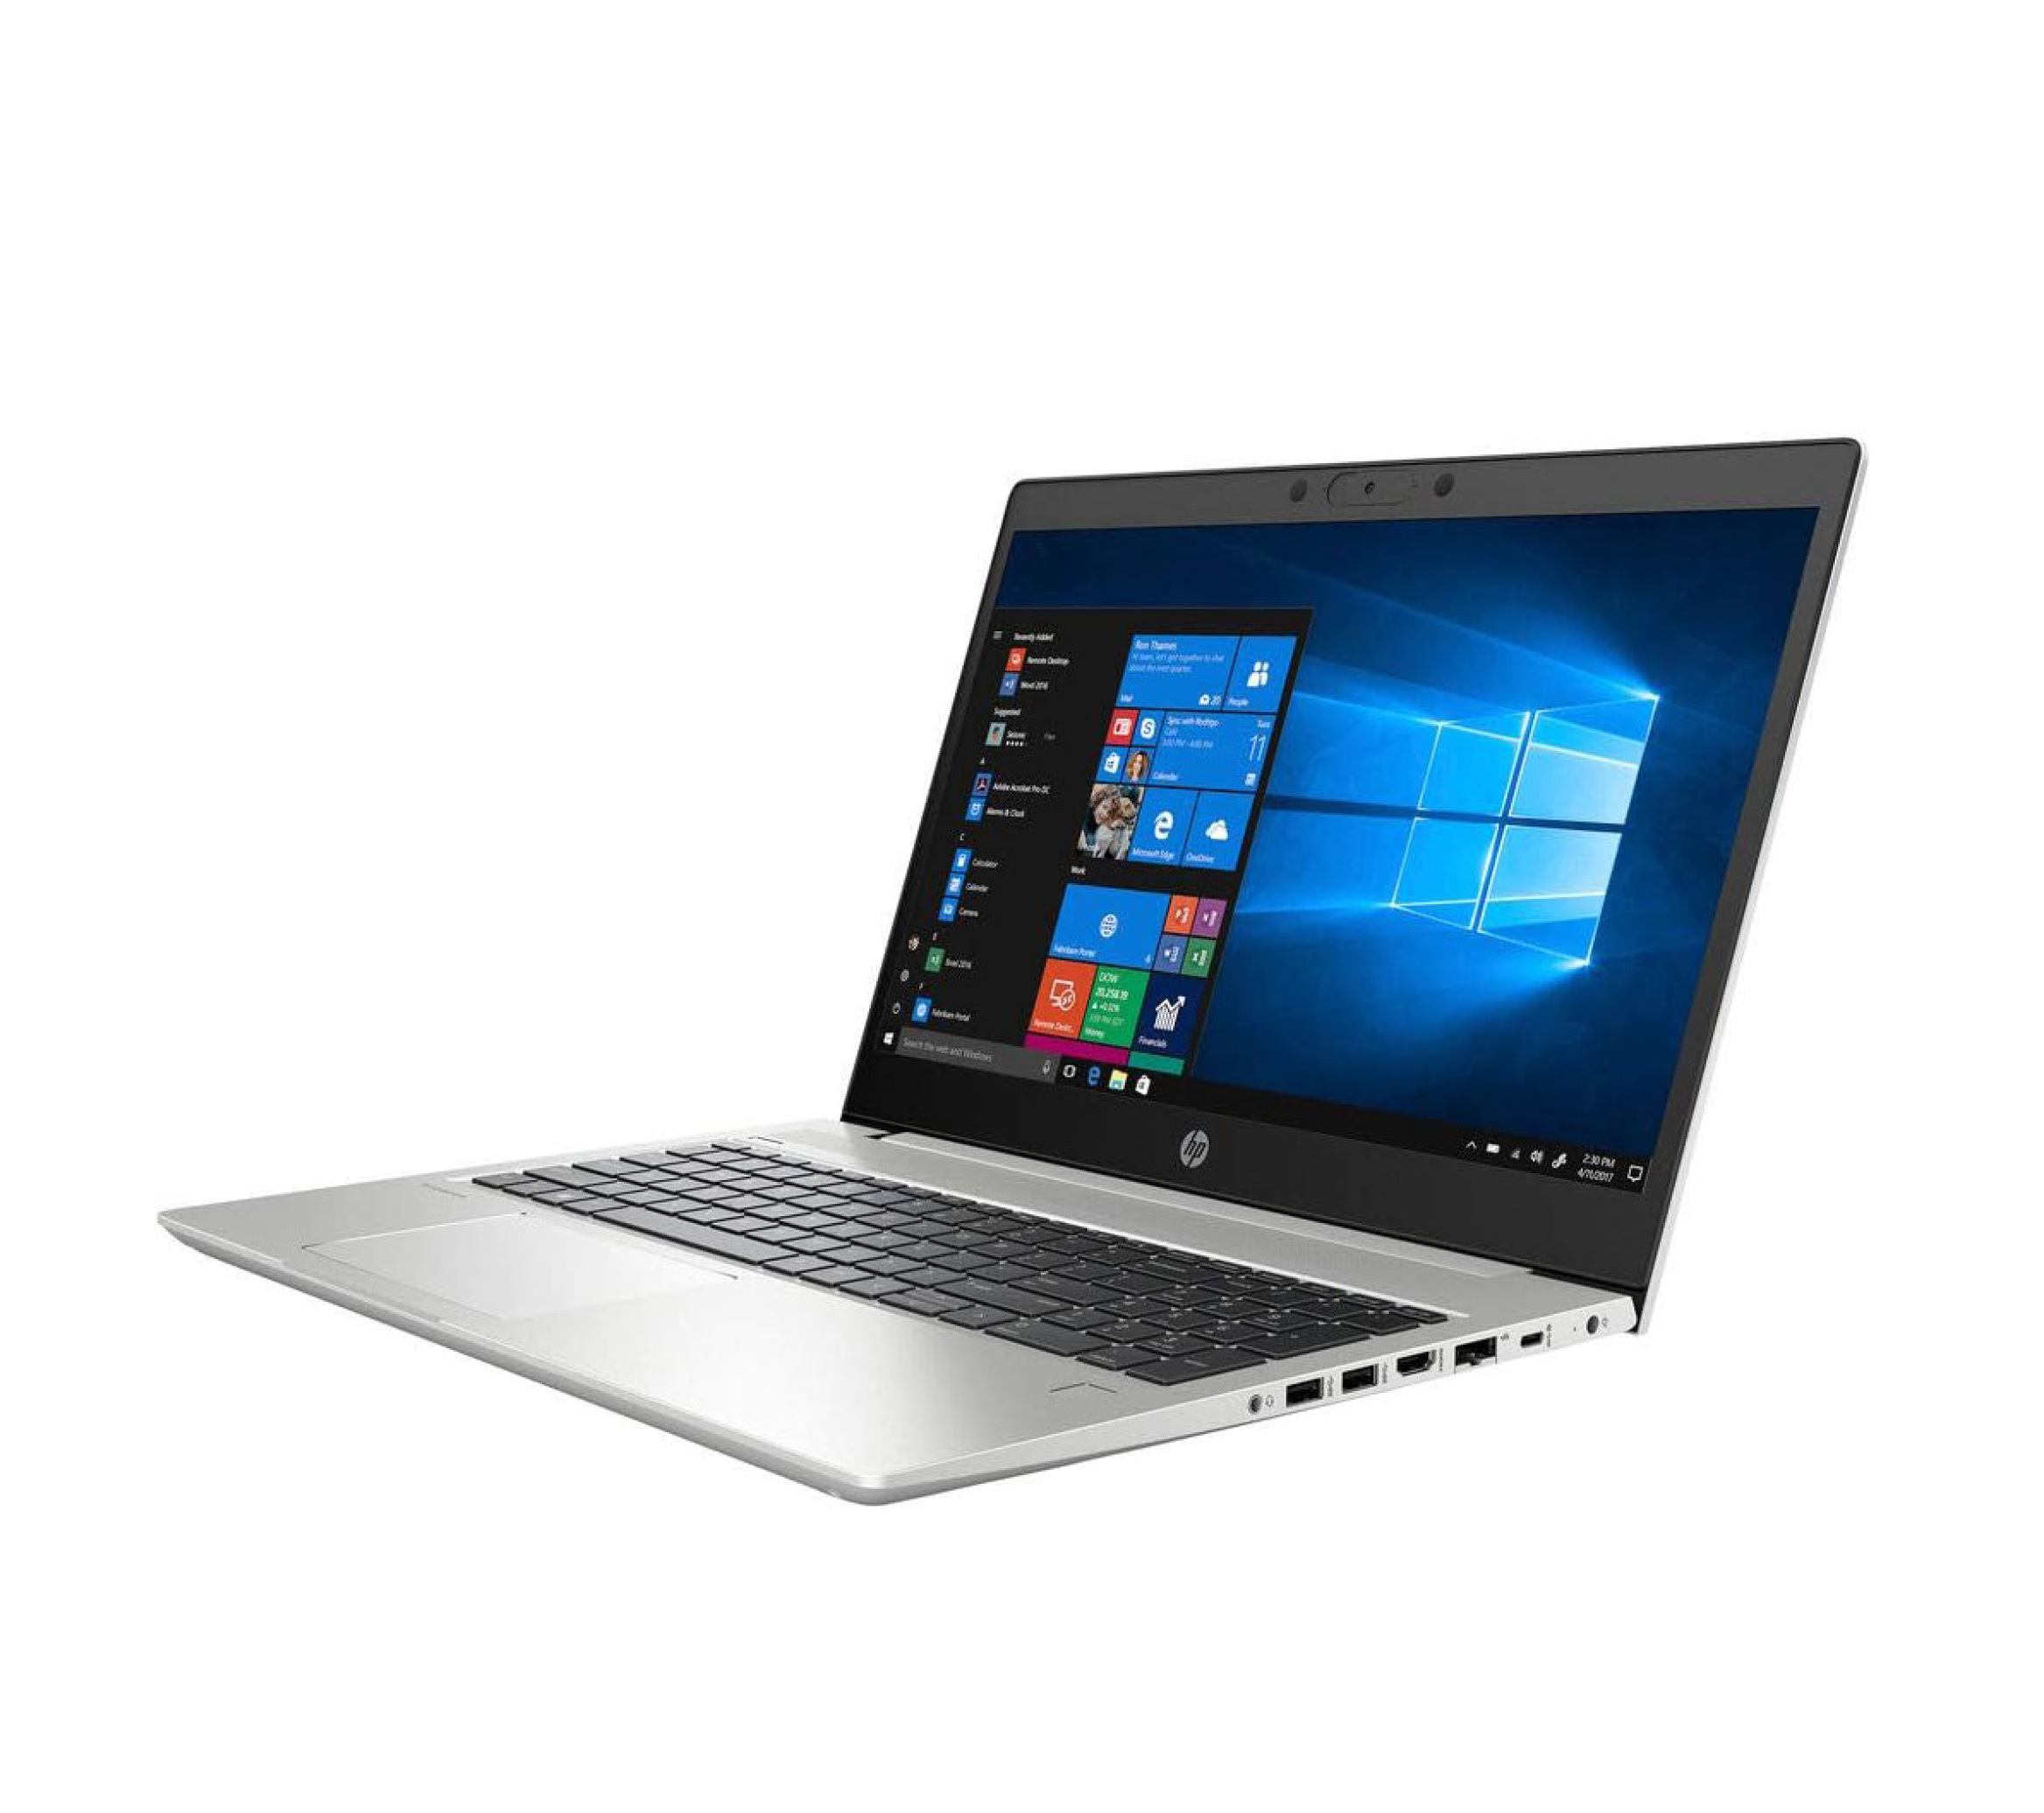  قیمت لپ تاپ HP ProBook 455 G7 - R5 4500U | لاکچری لپ تاپ 